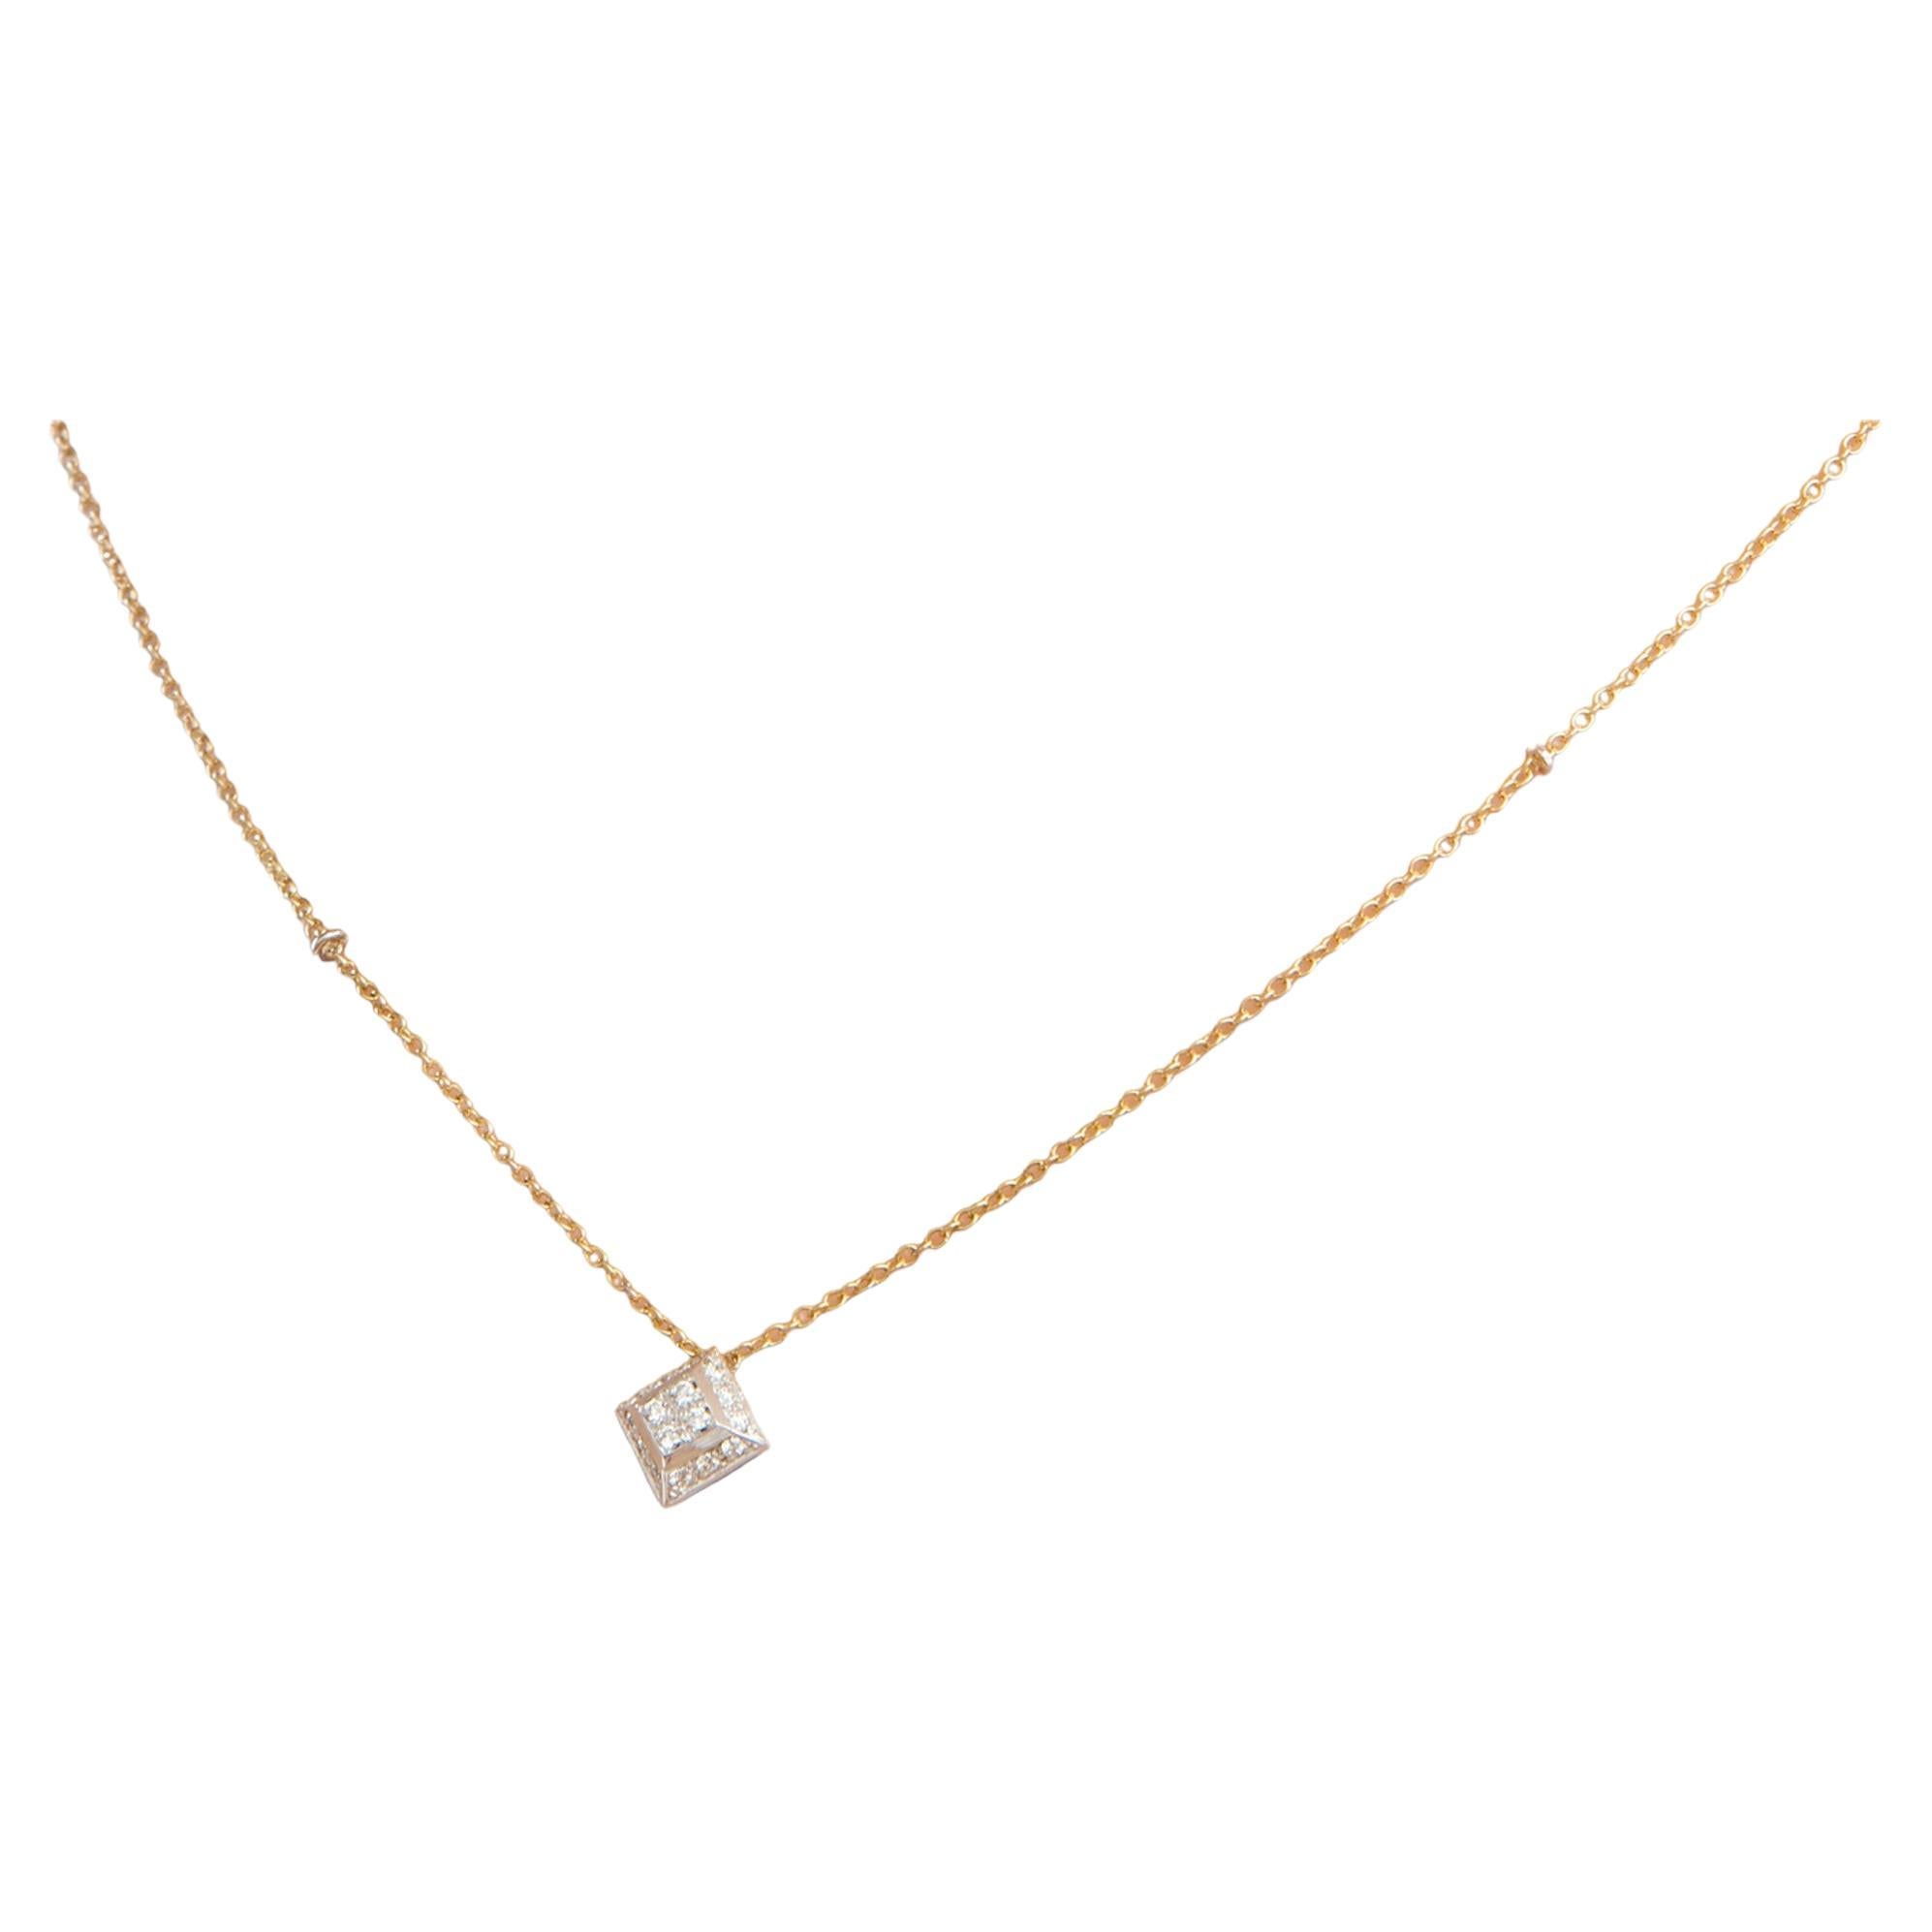 Collier pendentif unisexe moderne unisexe en or 18 carats avec diamants blancs de 0,20 carat